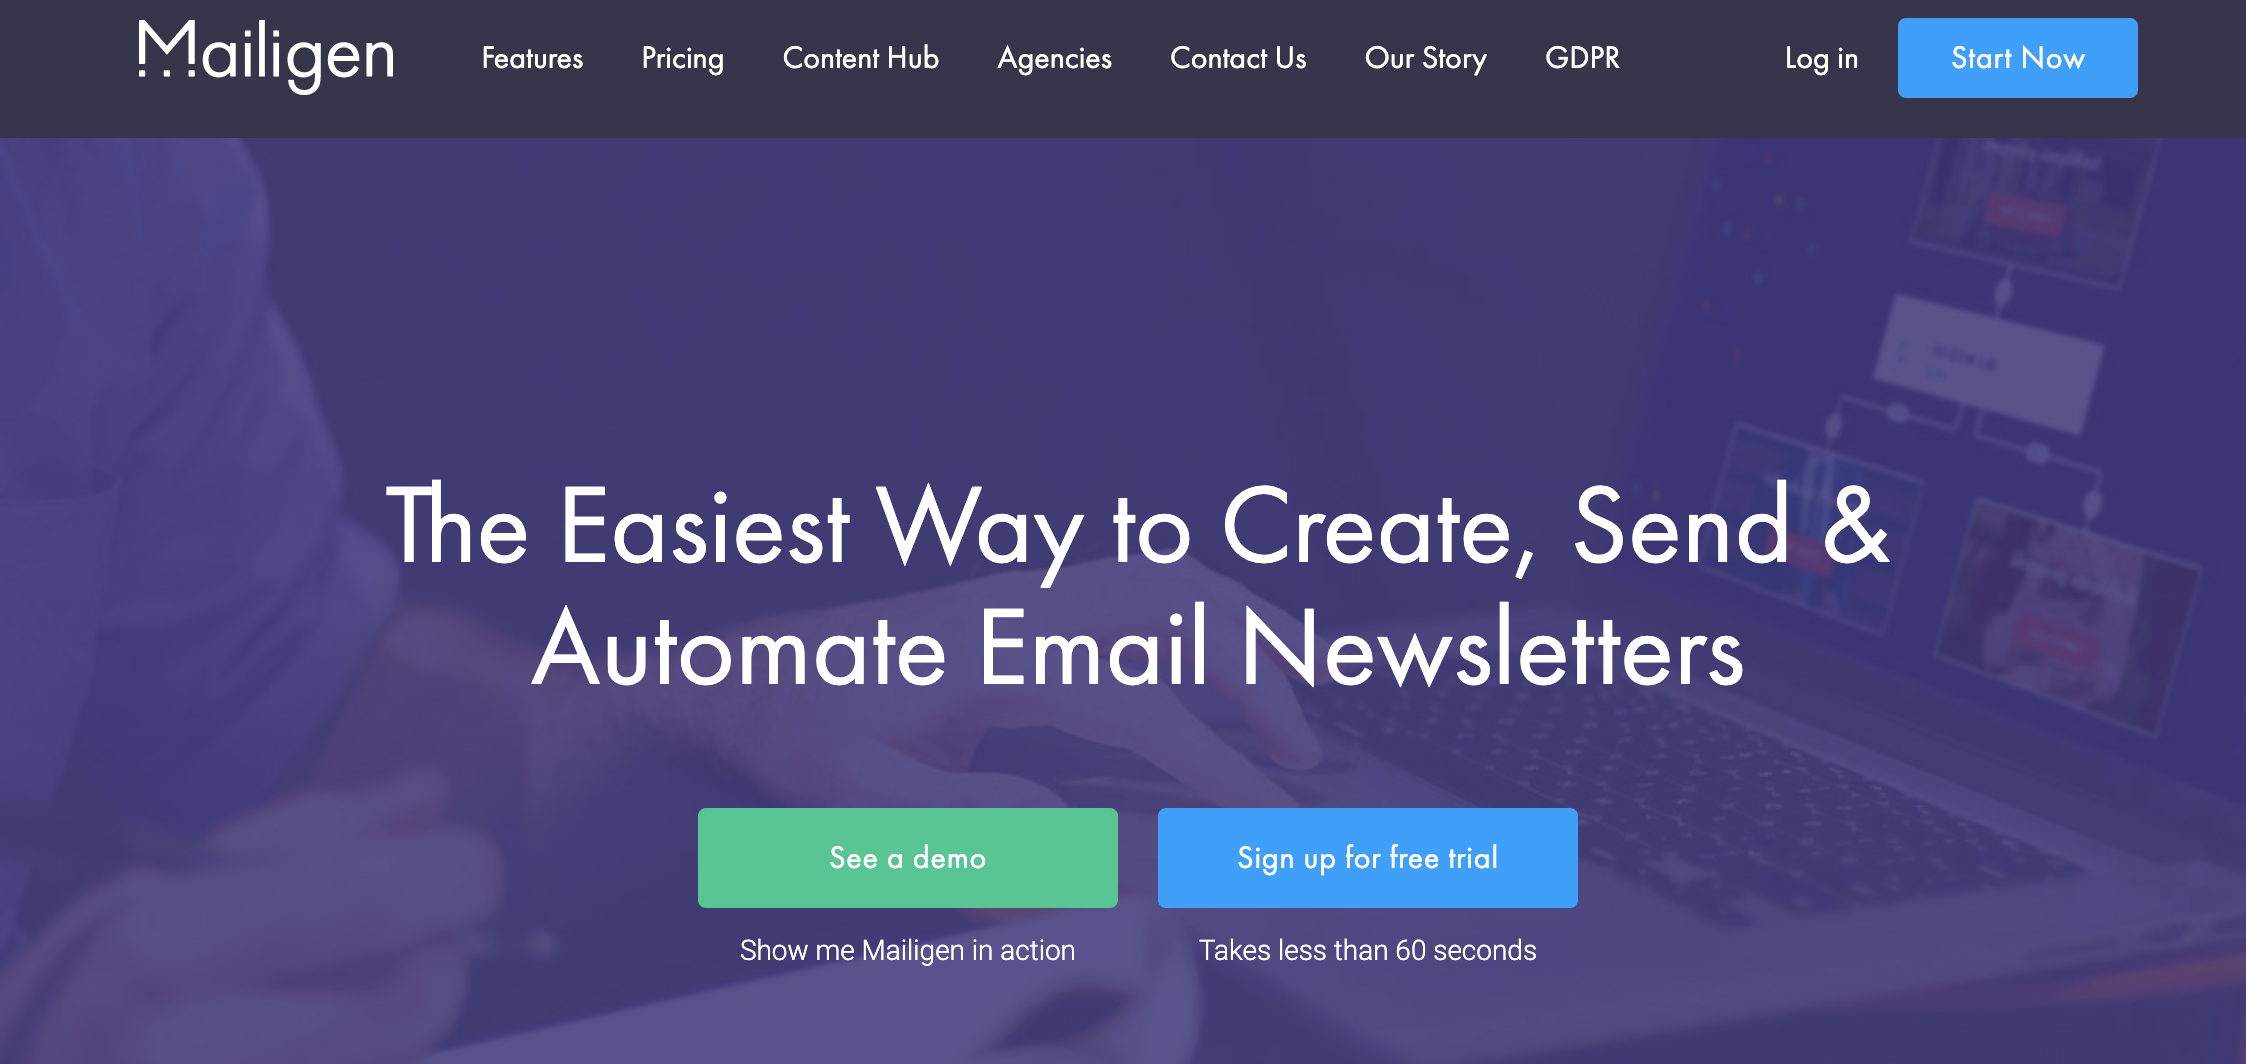 Mailgen como exemplo de ferramenta de email marketing